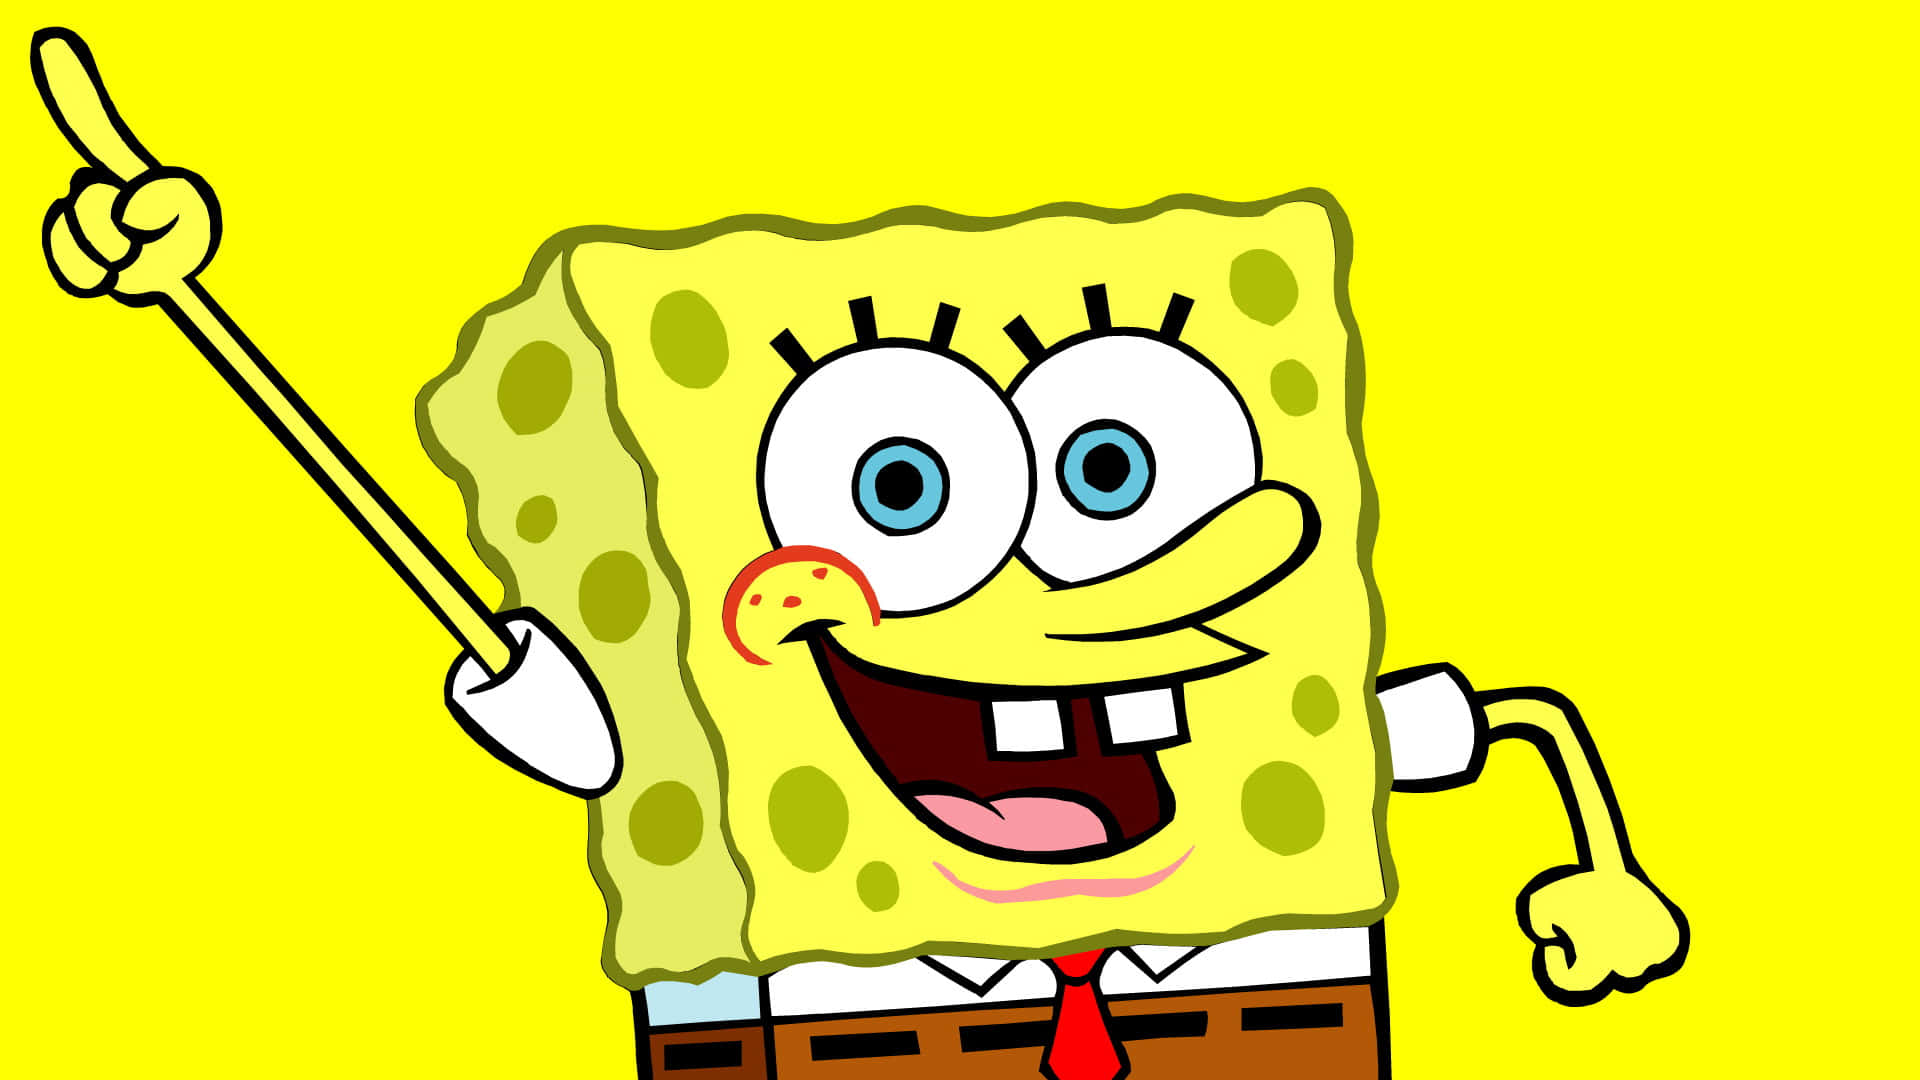 Join SpongeBob on His Fun Adventures!